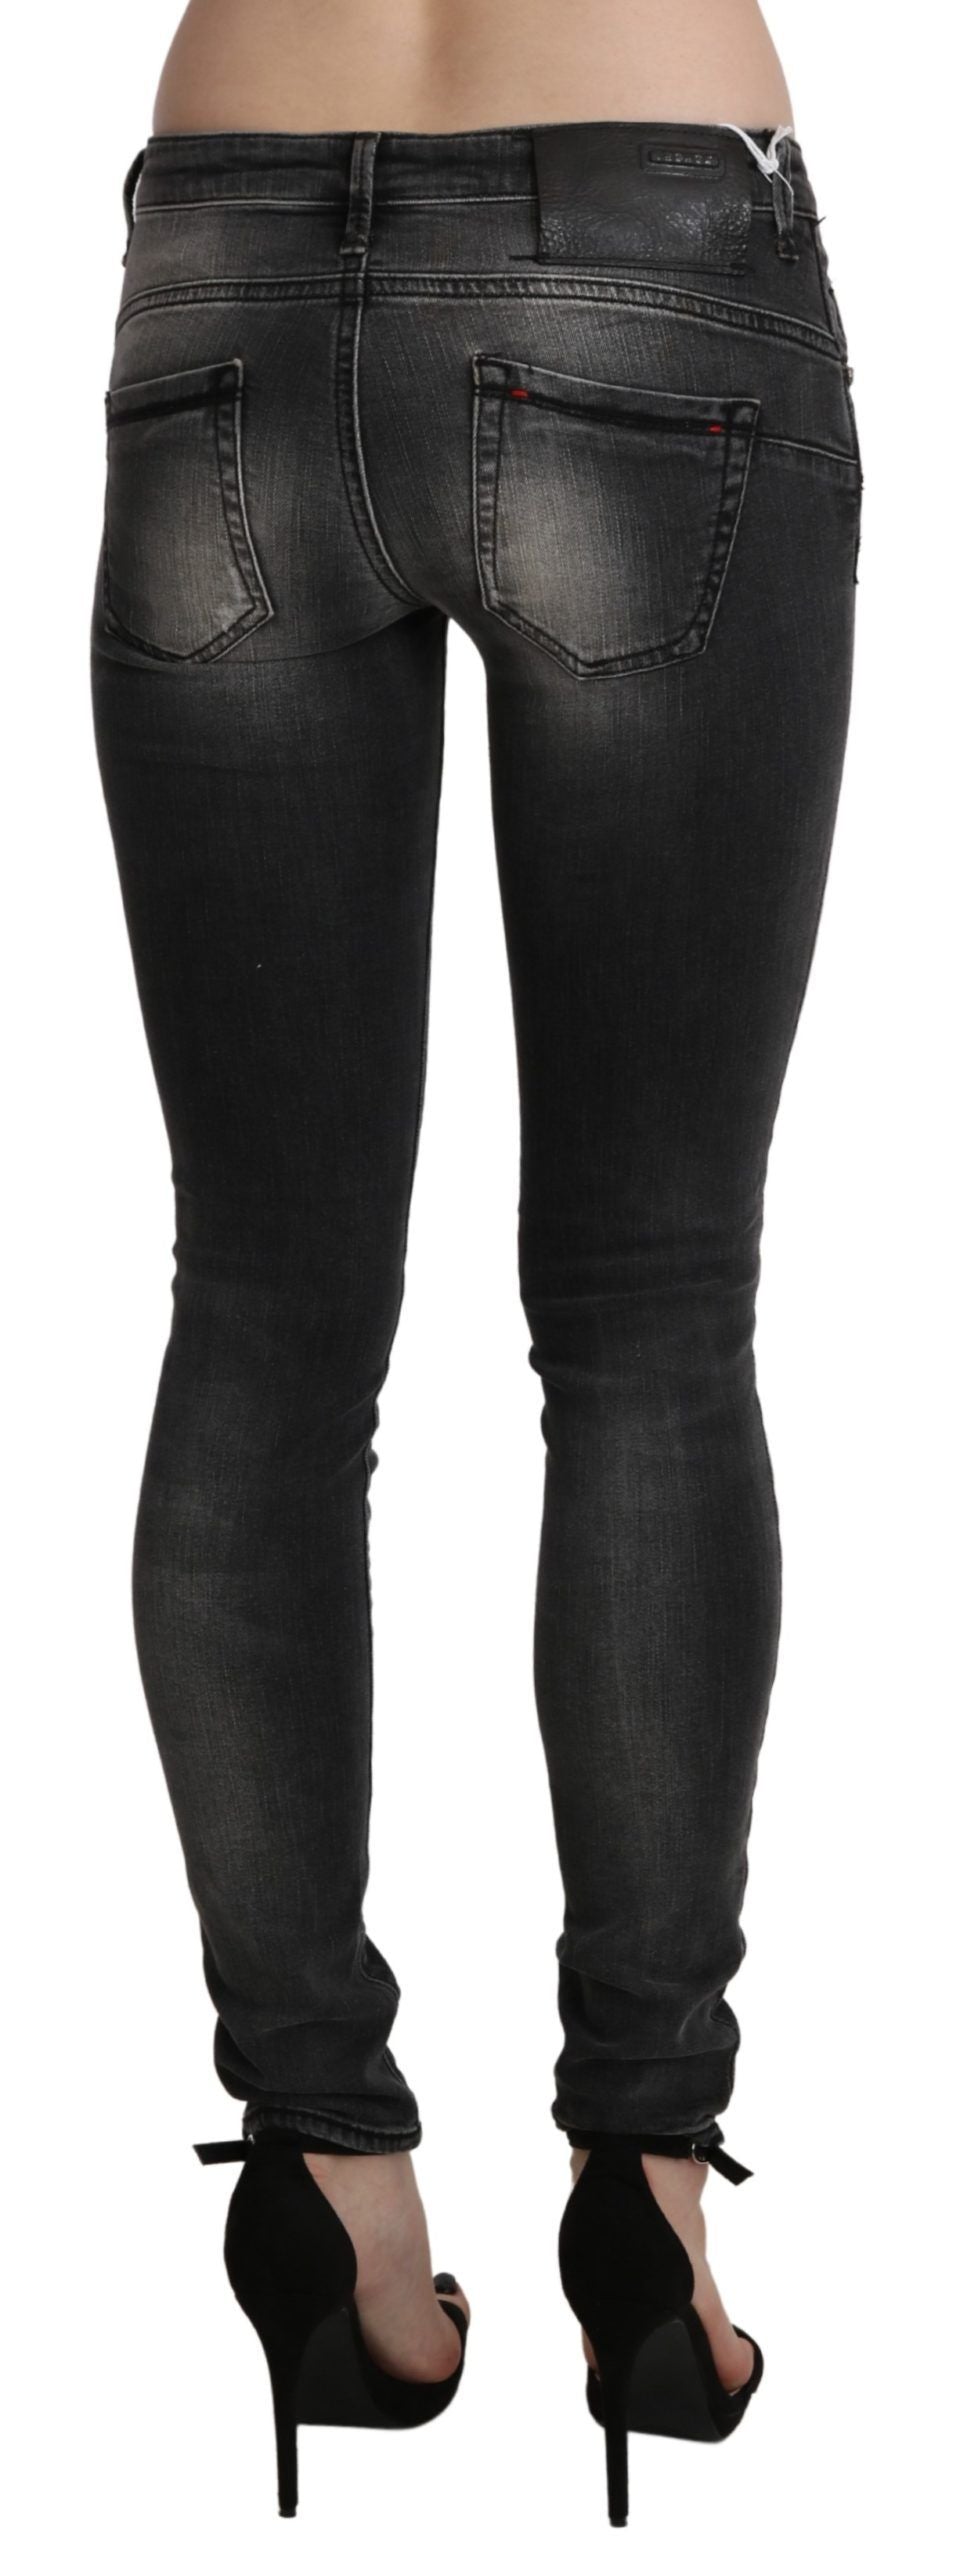 Памучни дънки с черни сиви изпрани тесни панталони Acht